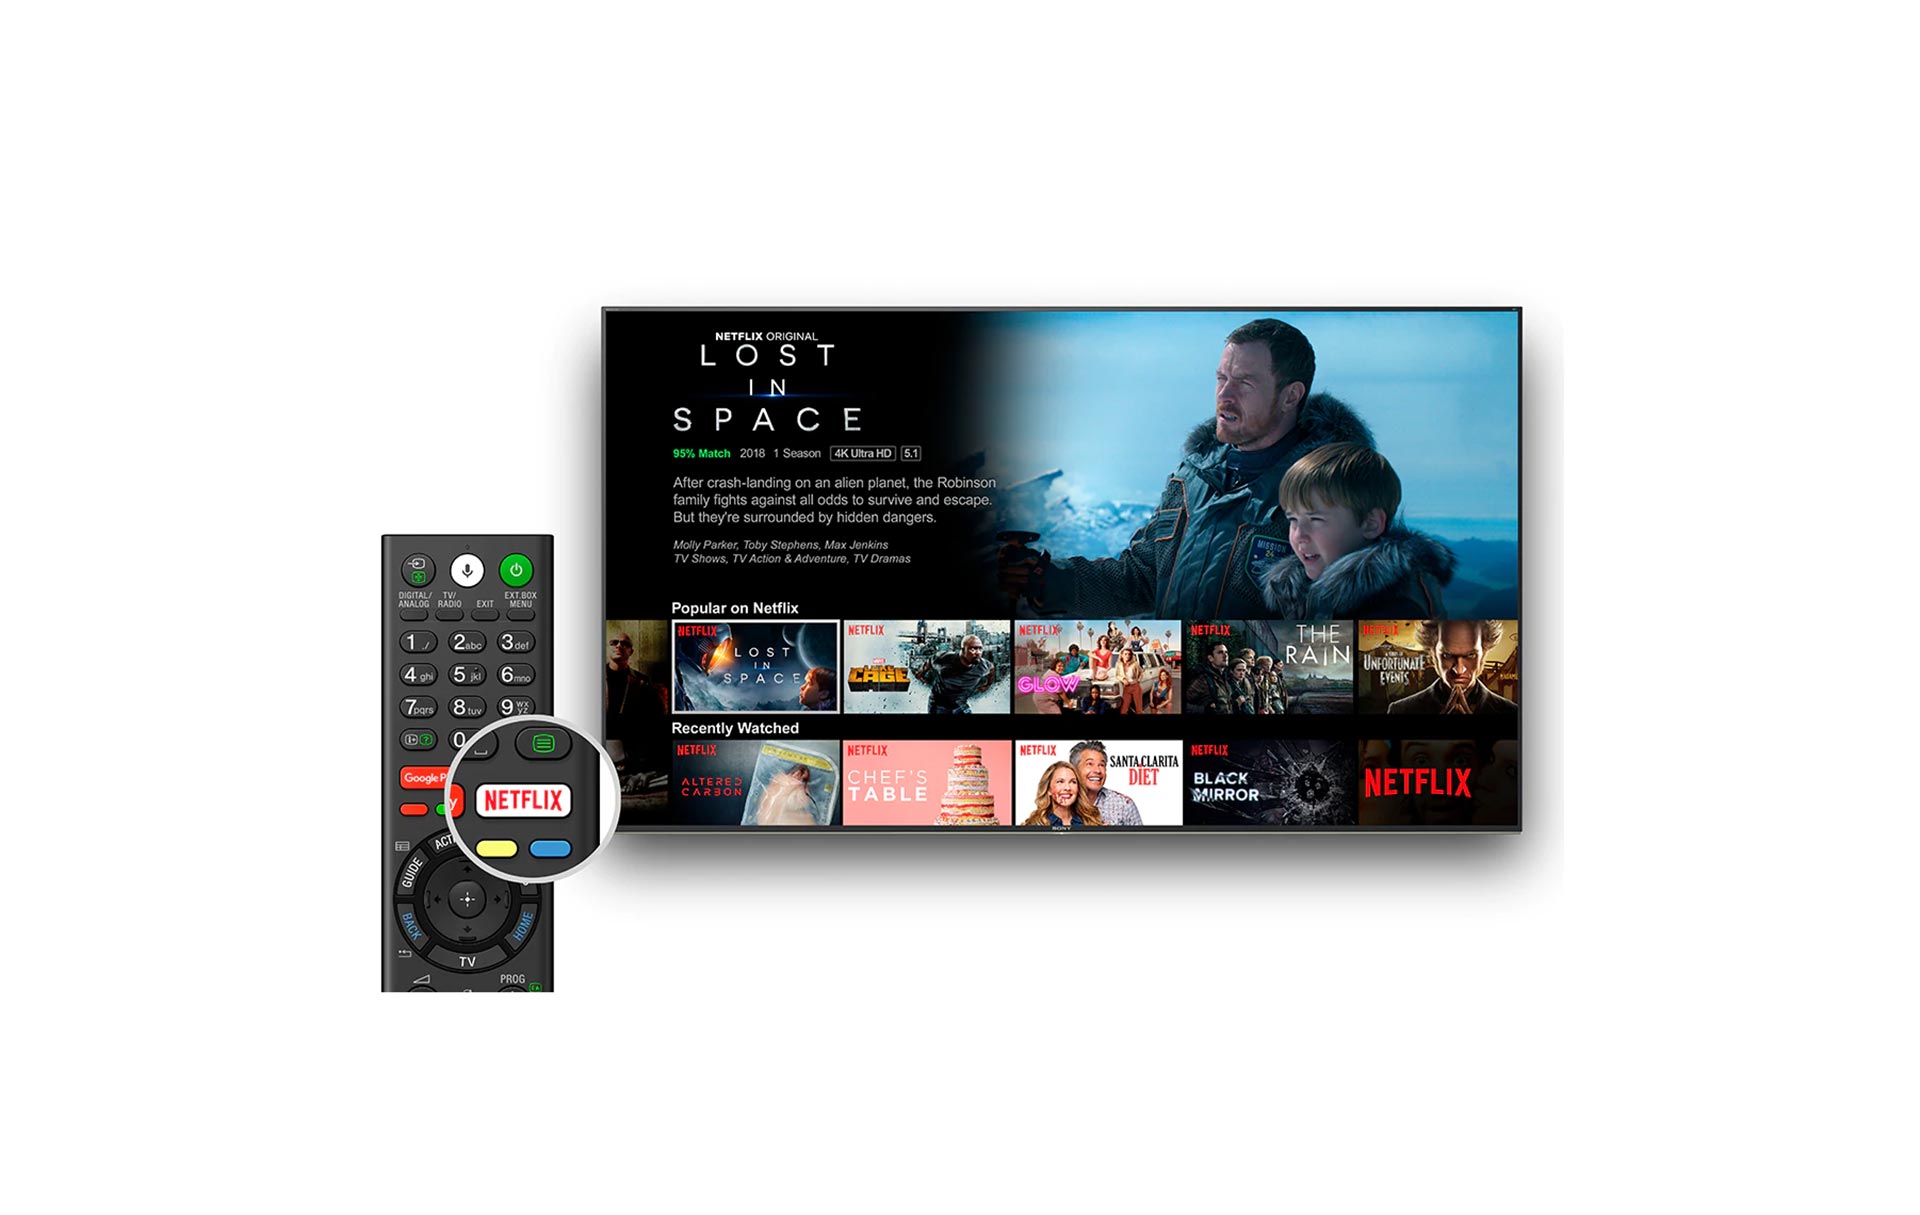 دکمه های اختصاصی نت فلیکس و یوتیوب در ریموت کنترل تلویزیون X9000H